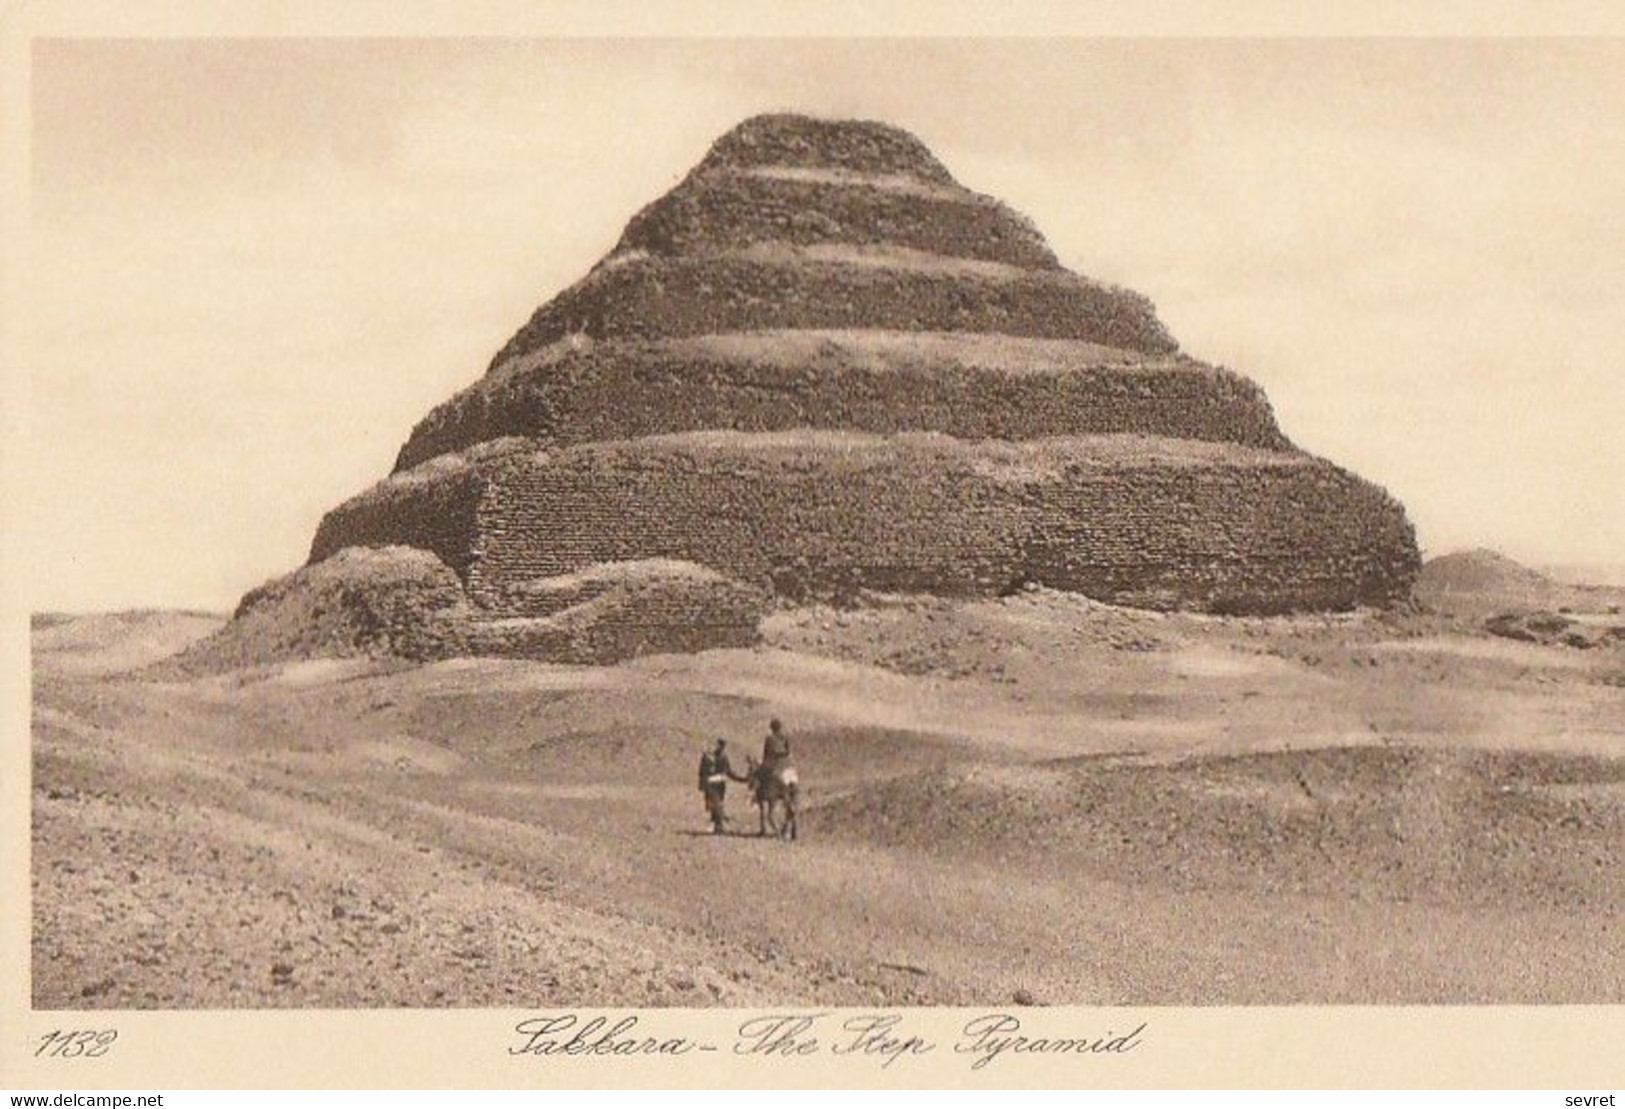 SAKKARA. - The Step Pyramid - Pyramids